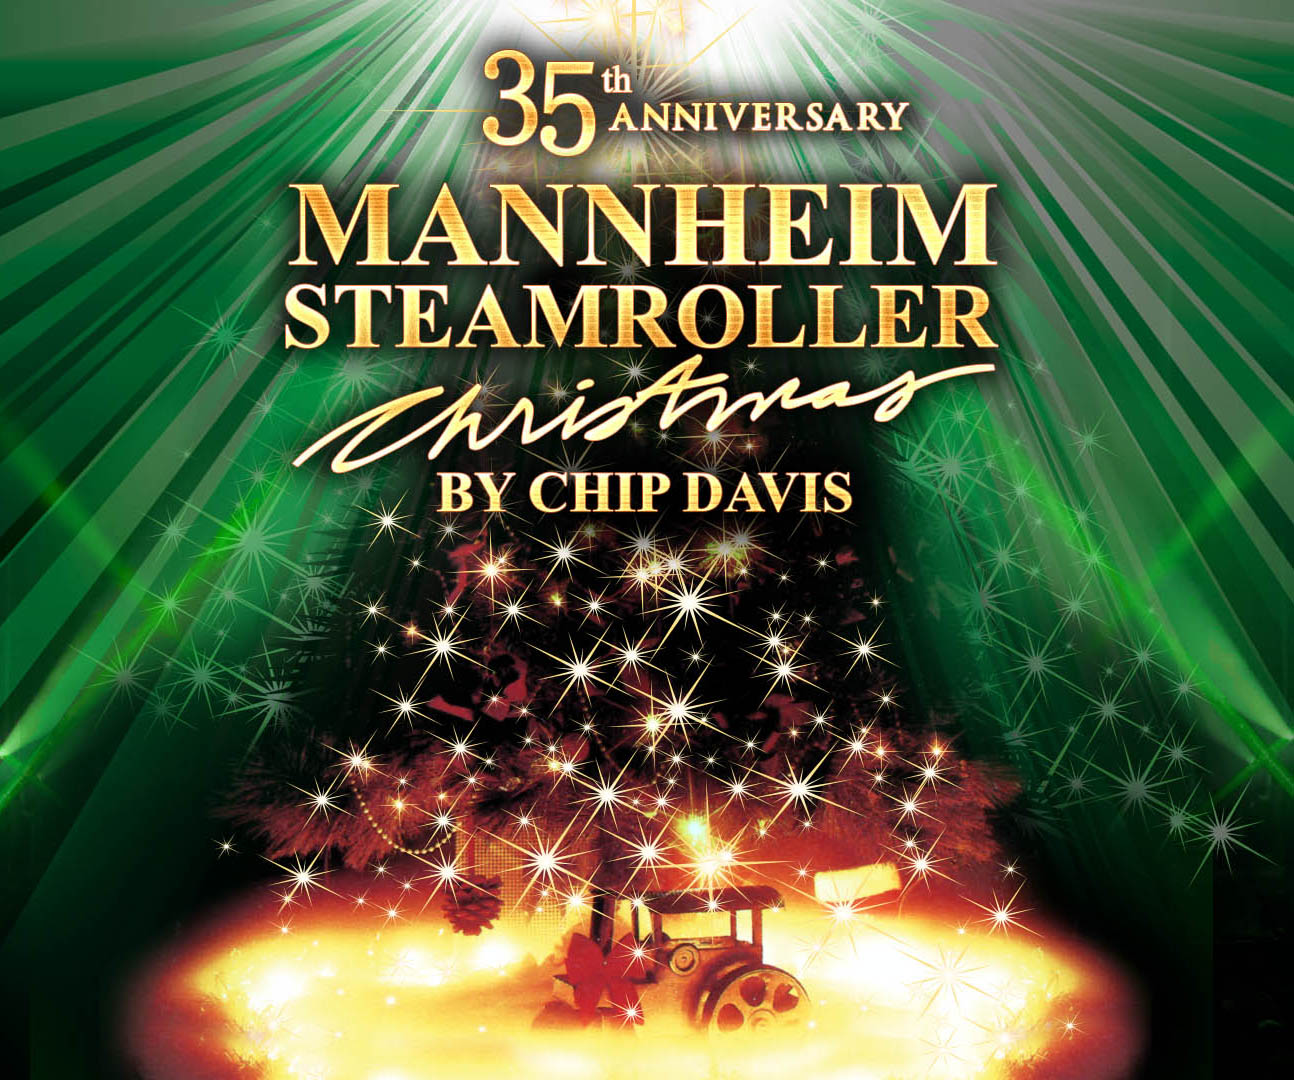 Mannheim steamroller tour dates 2020